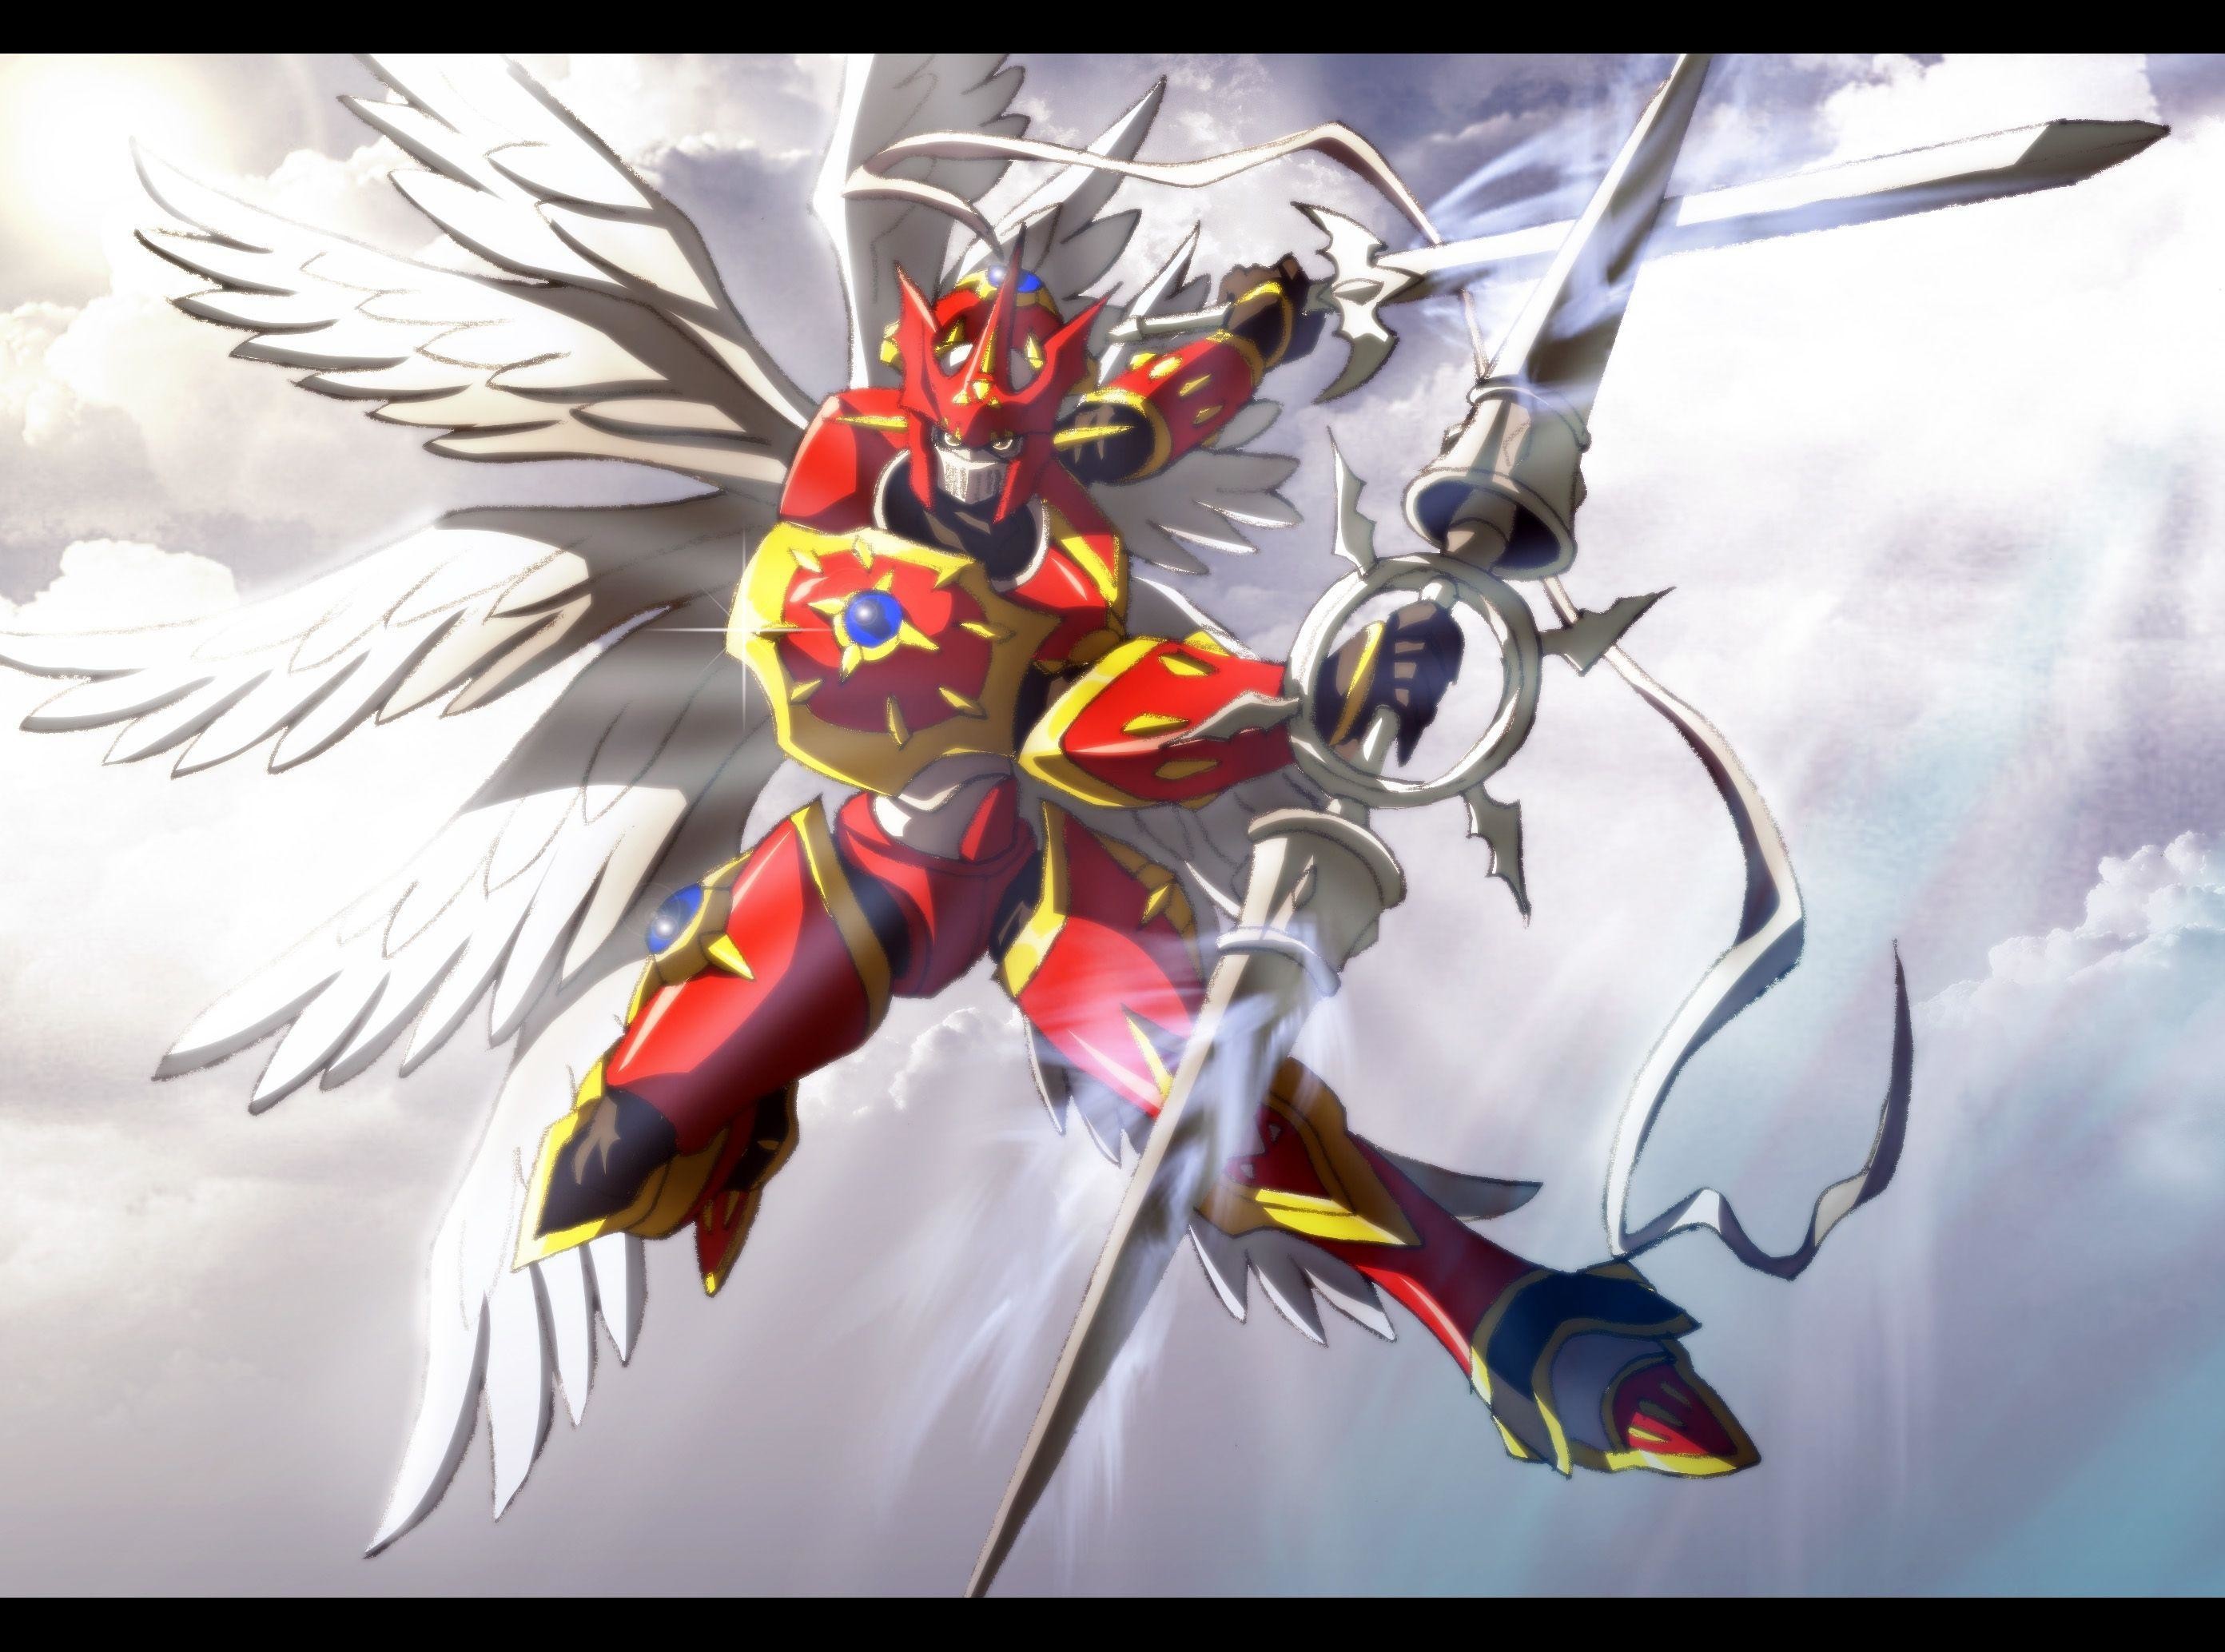 2784x2067 Dukemon Digimon Tamers Sky Sword Light hd wallpaper # 